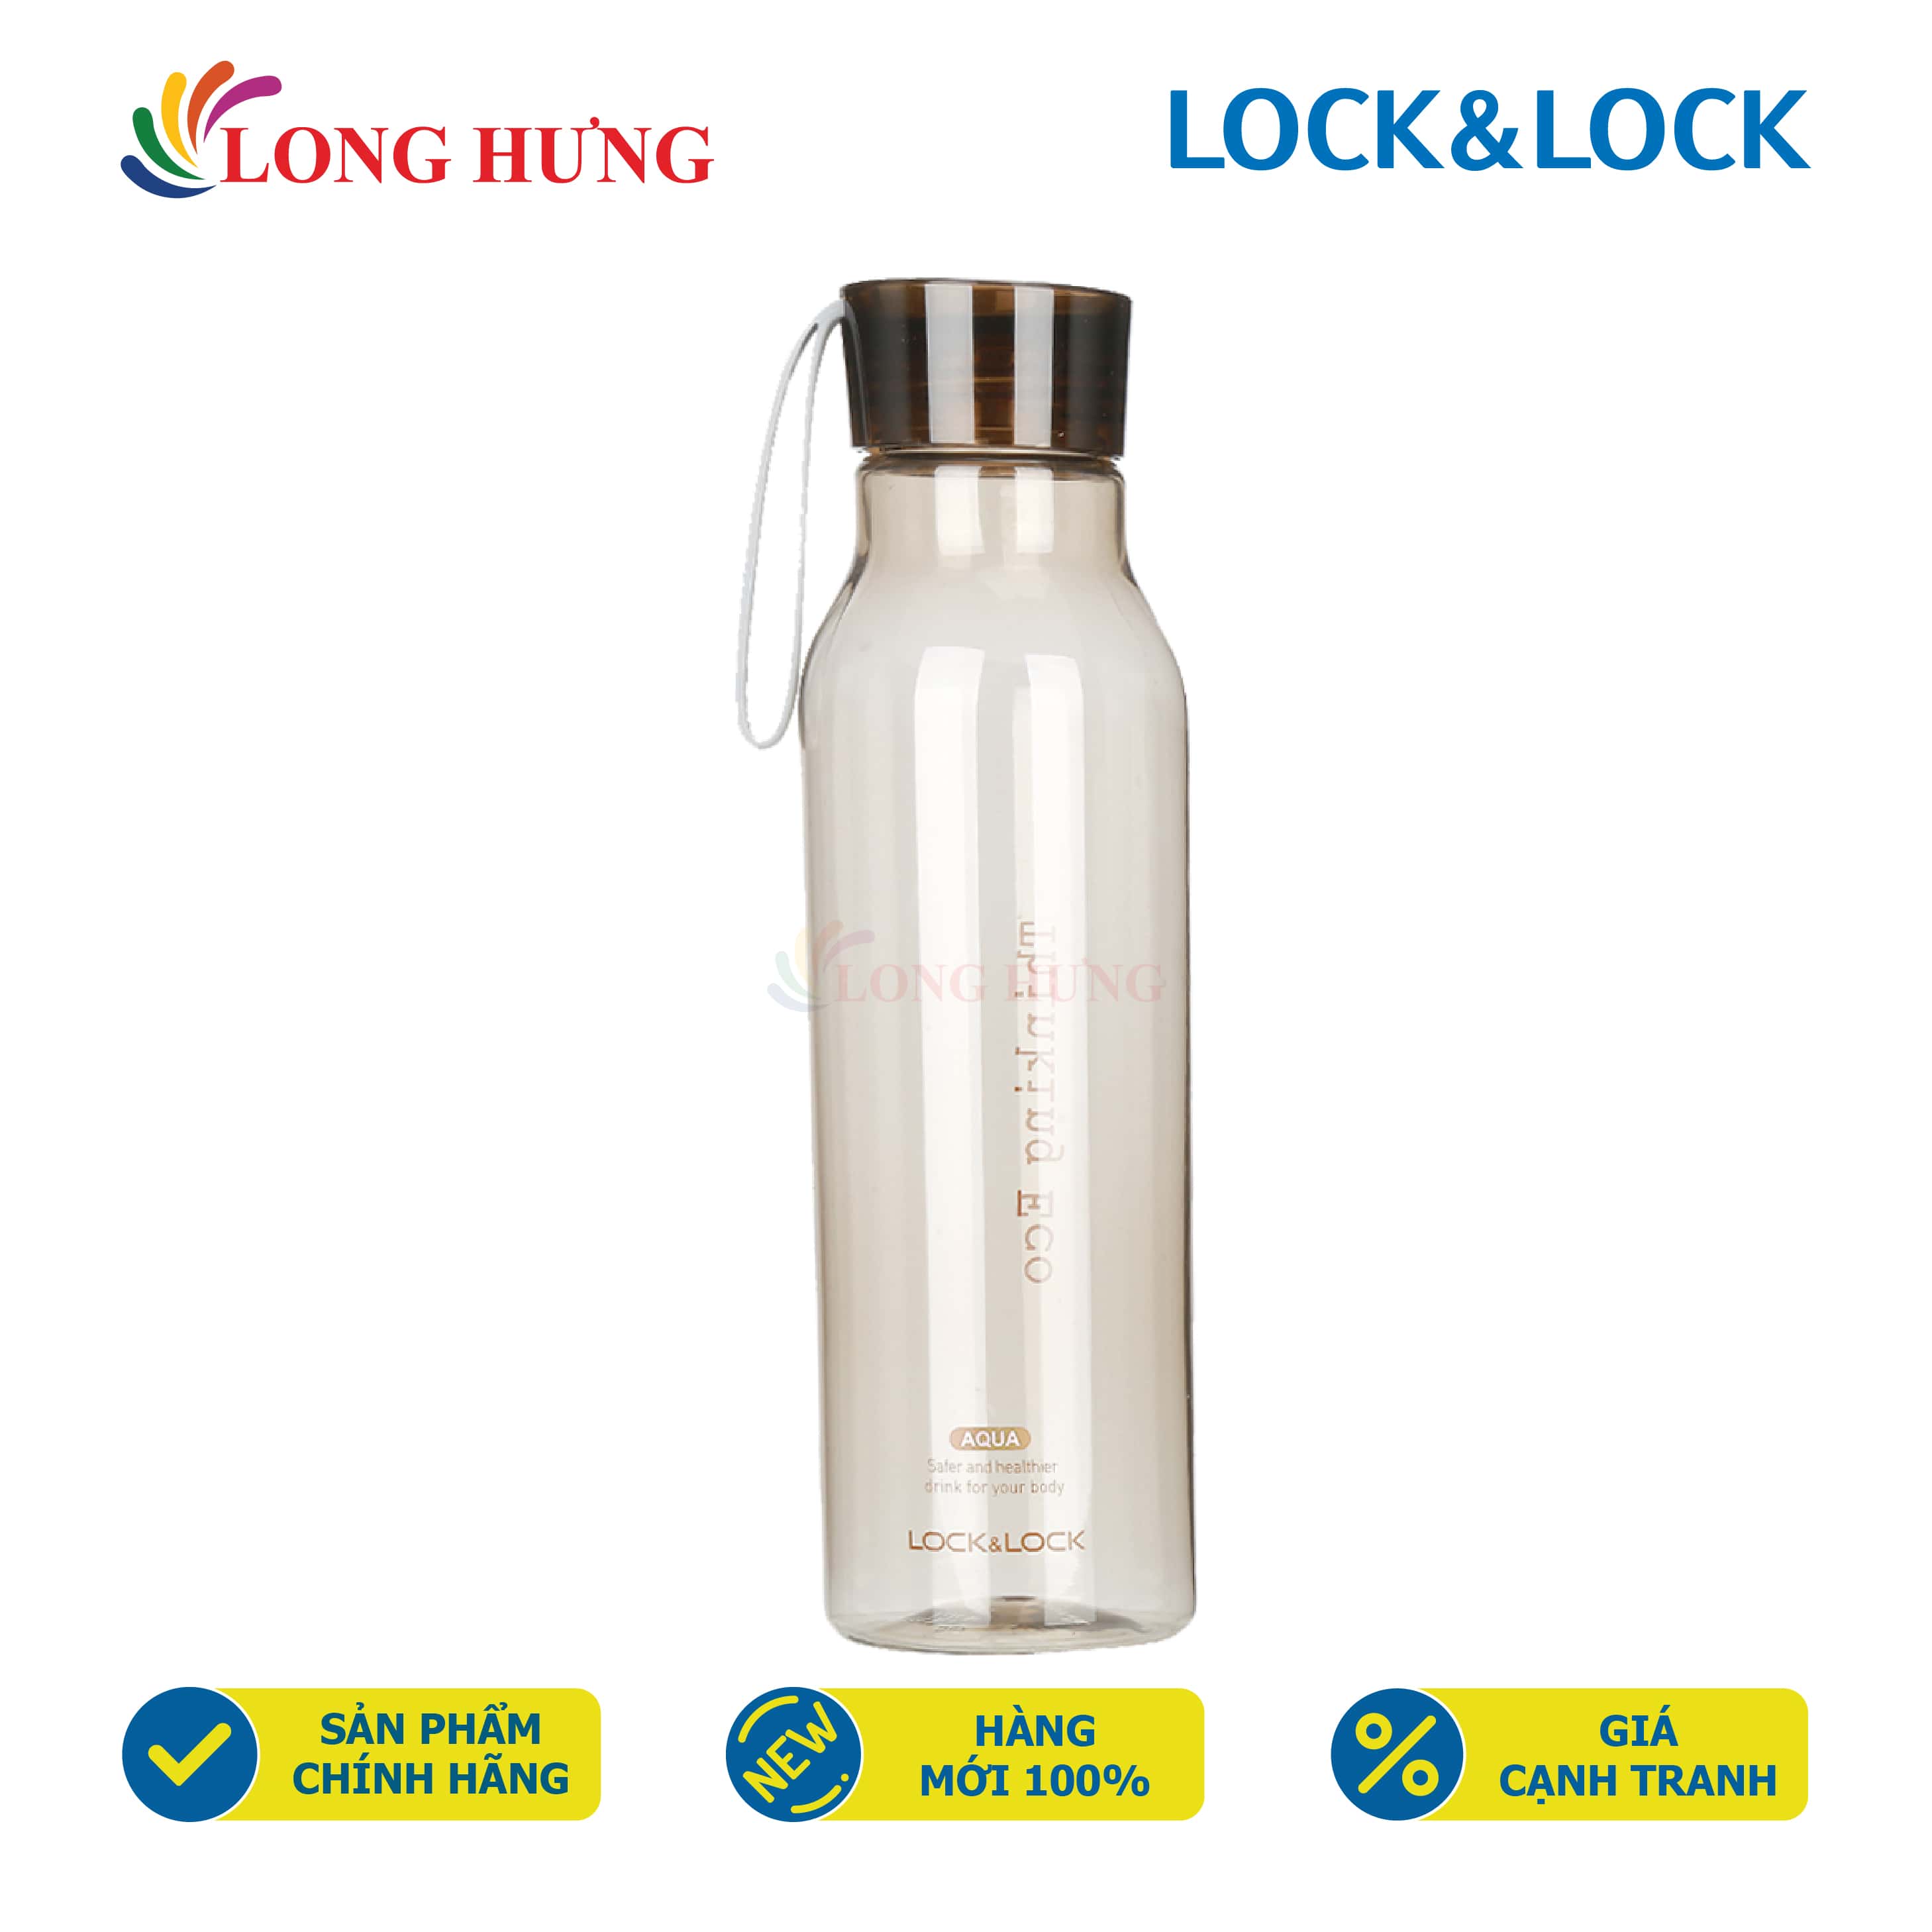 Bình nước Lock&Lock Eco Bottle 550ml HLC644 - Hàng chính hãng - Dung tích 550 ml, Có nhiều màu sắc, Dùng để đựng nước lọc và nước detox